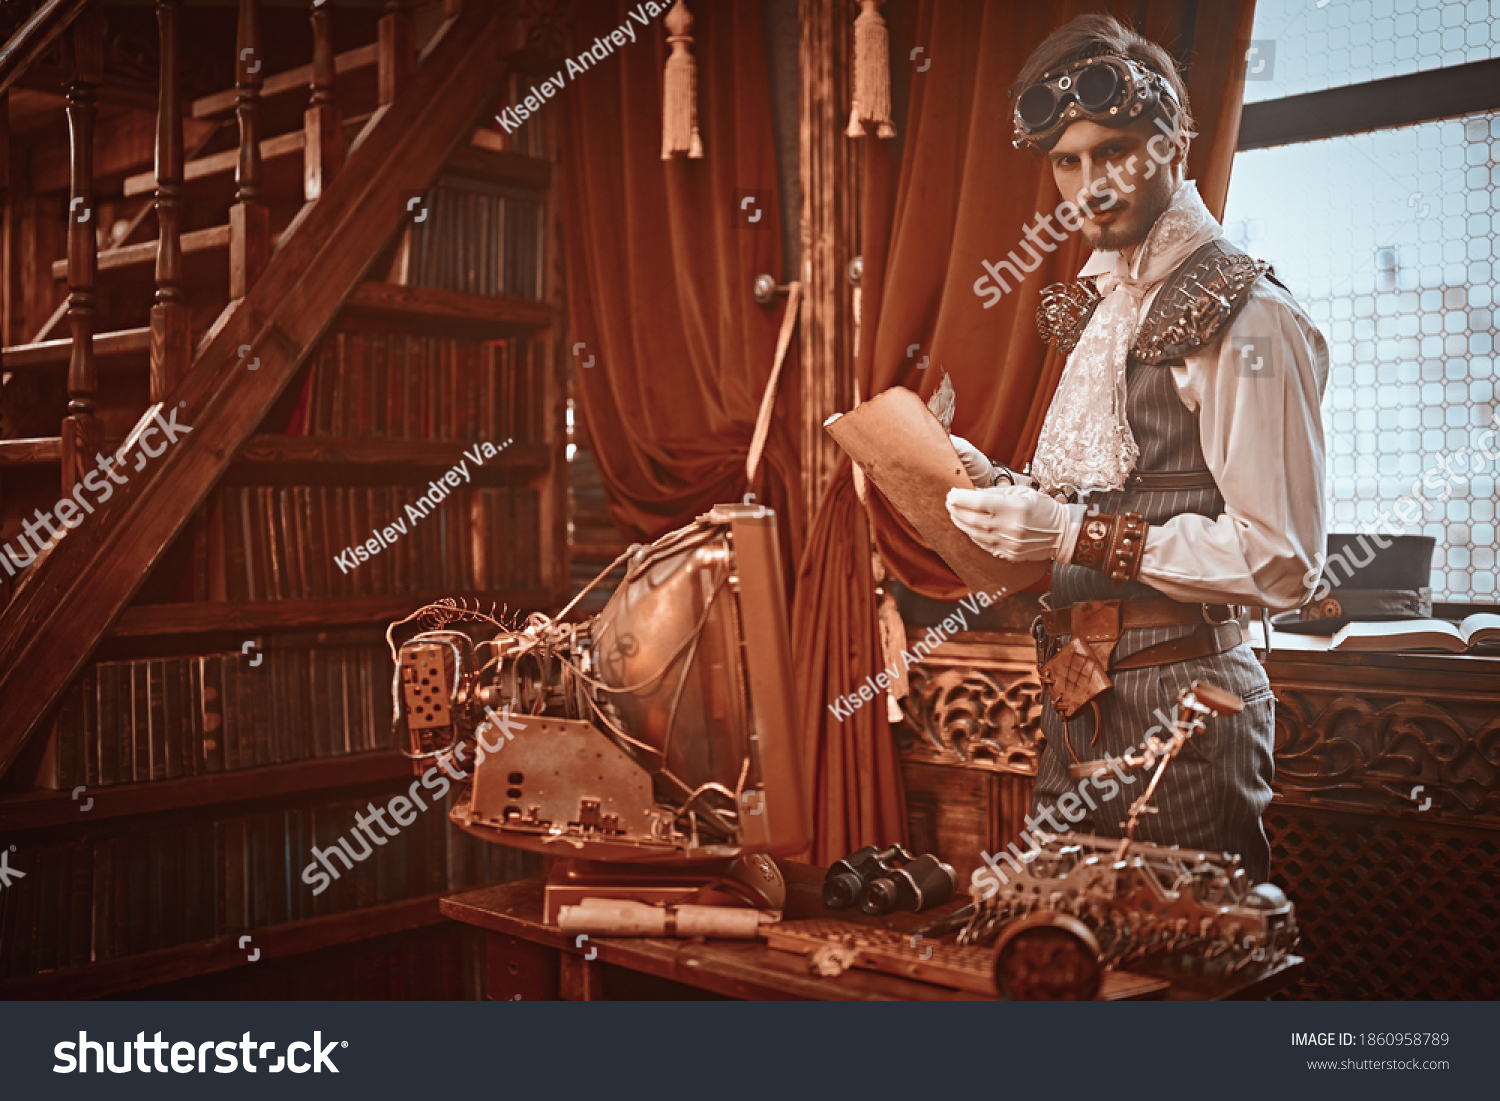 Scientist steampunk man inventor works in his laboratory with Victorian interior. Adventure world of steampunk. #1860958789